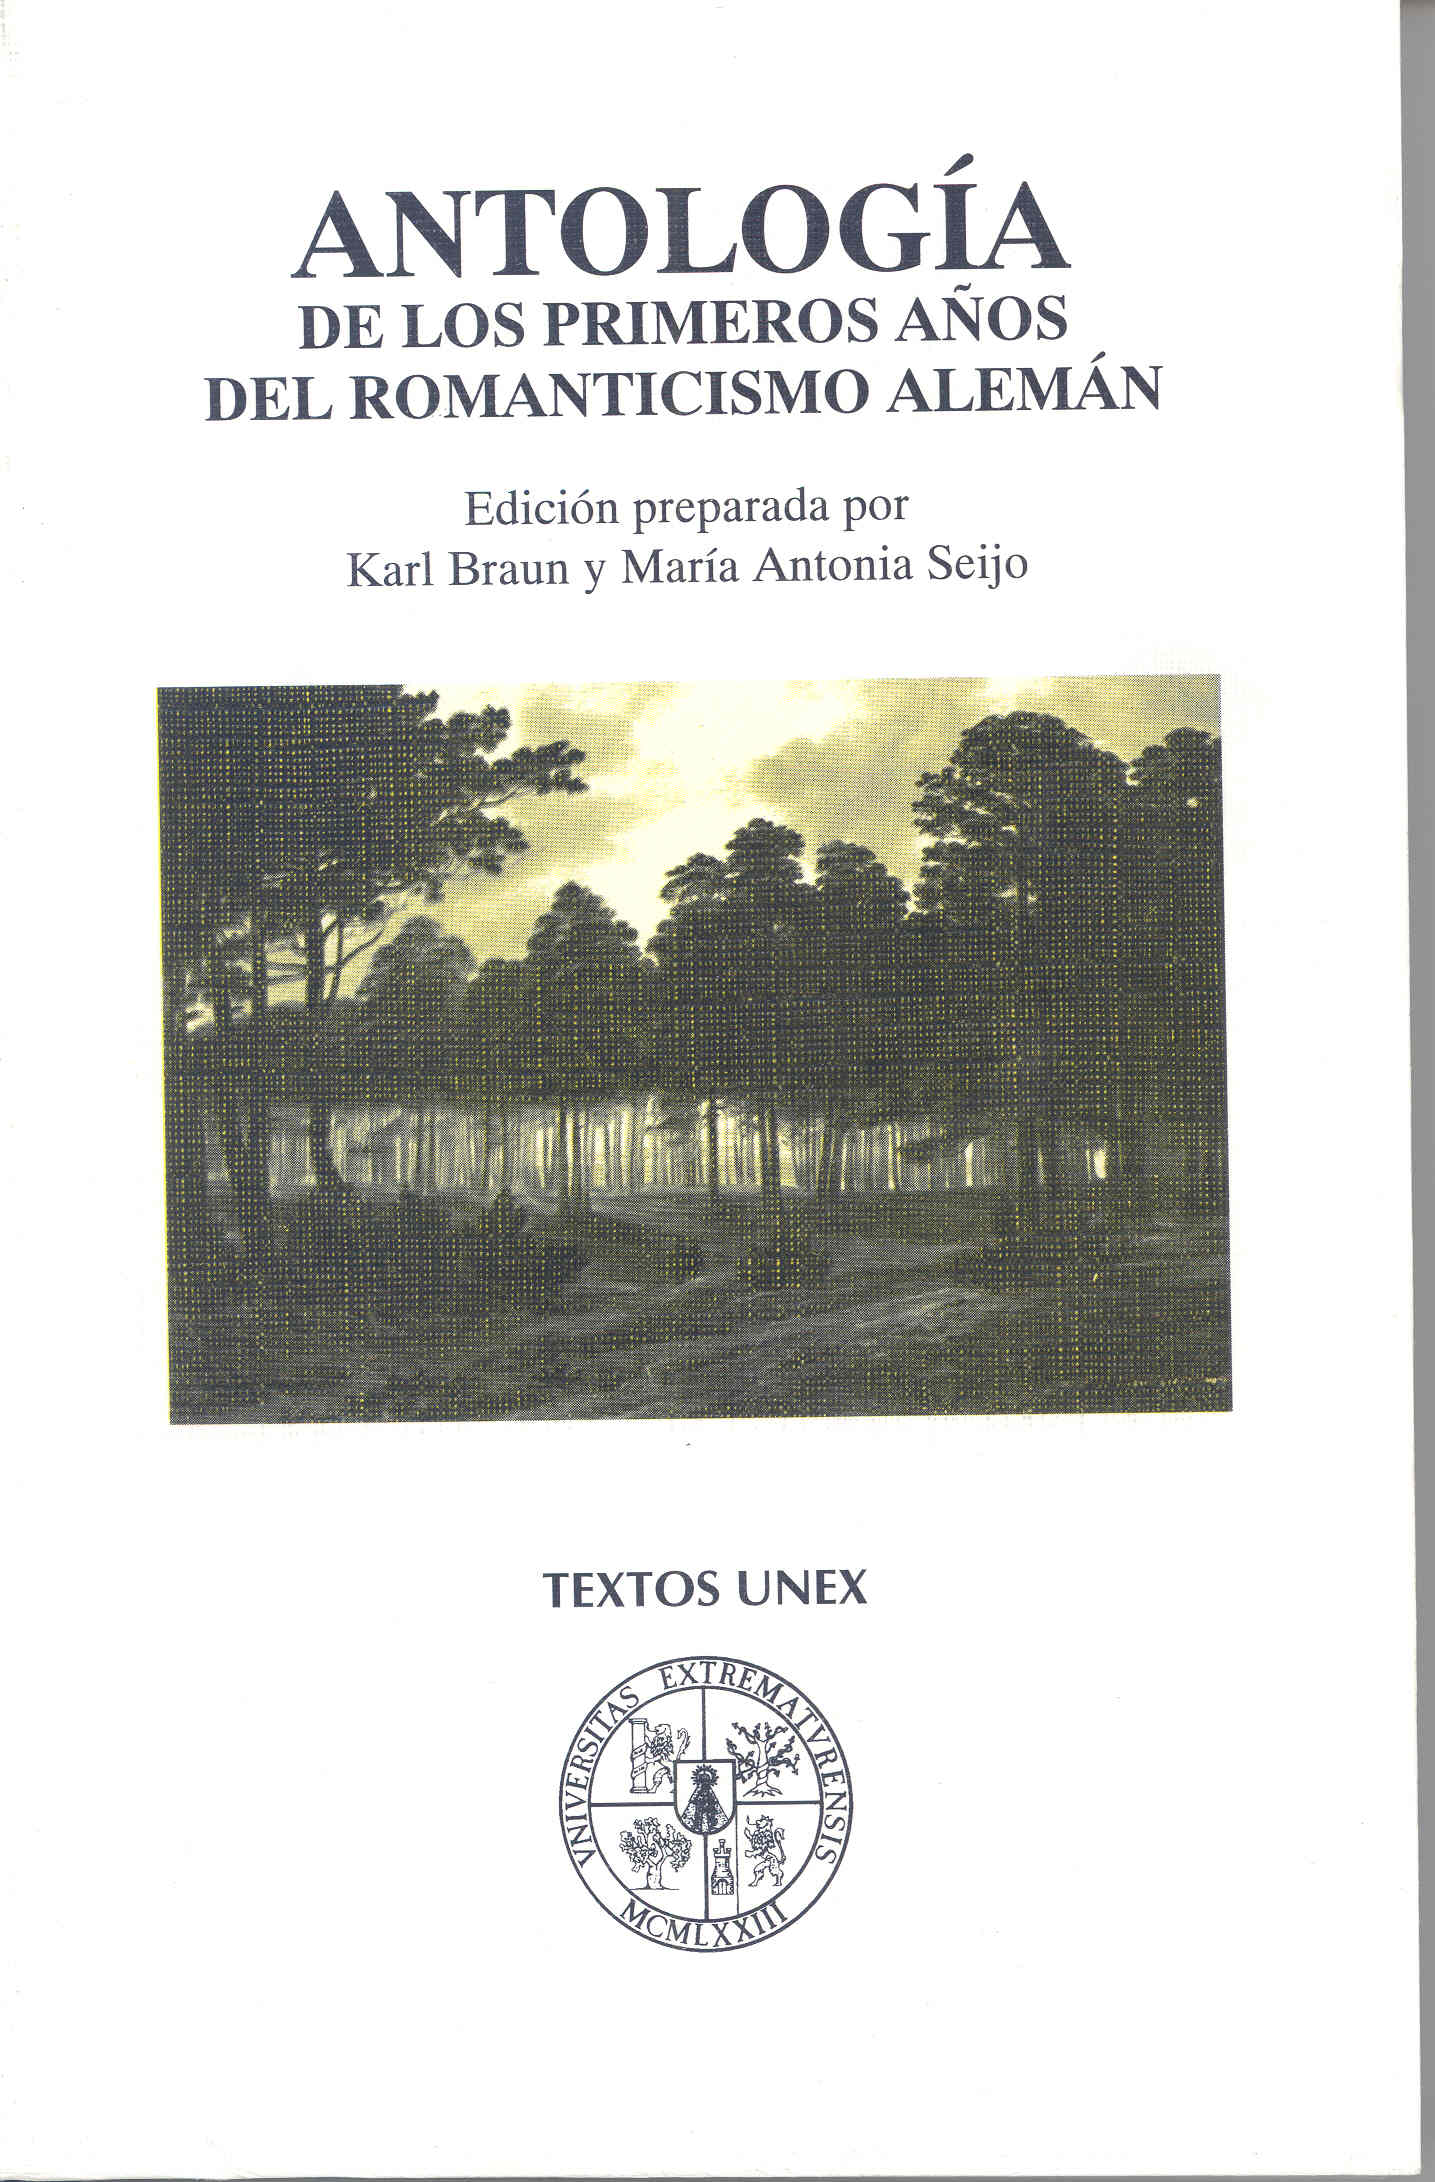 Imagen de portada del libro Antología de los primeros años del romanticismo alemán